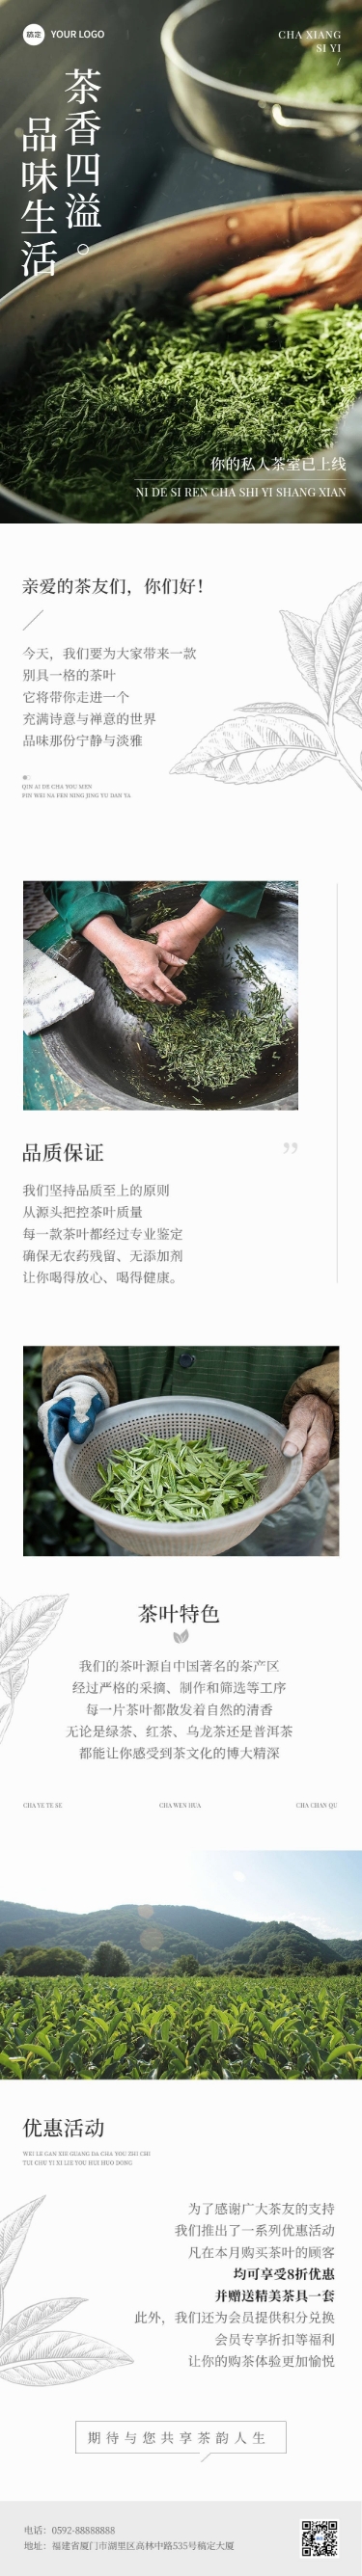 茶叶营销卖货宣传文艺风微信公众号文章长图